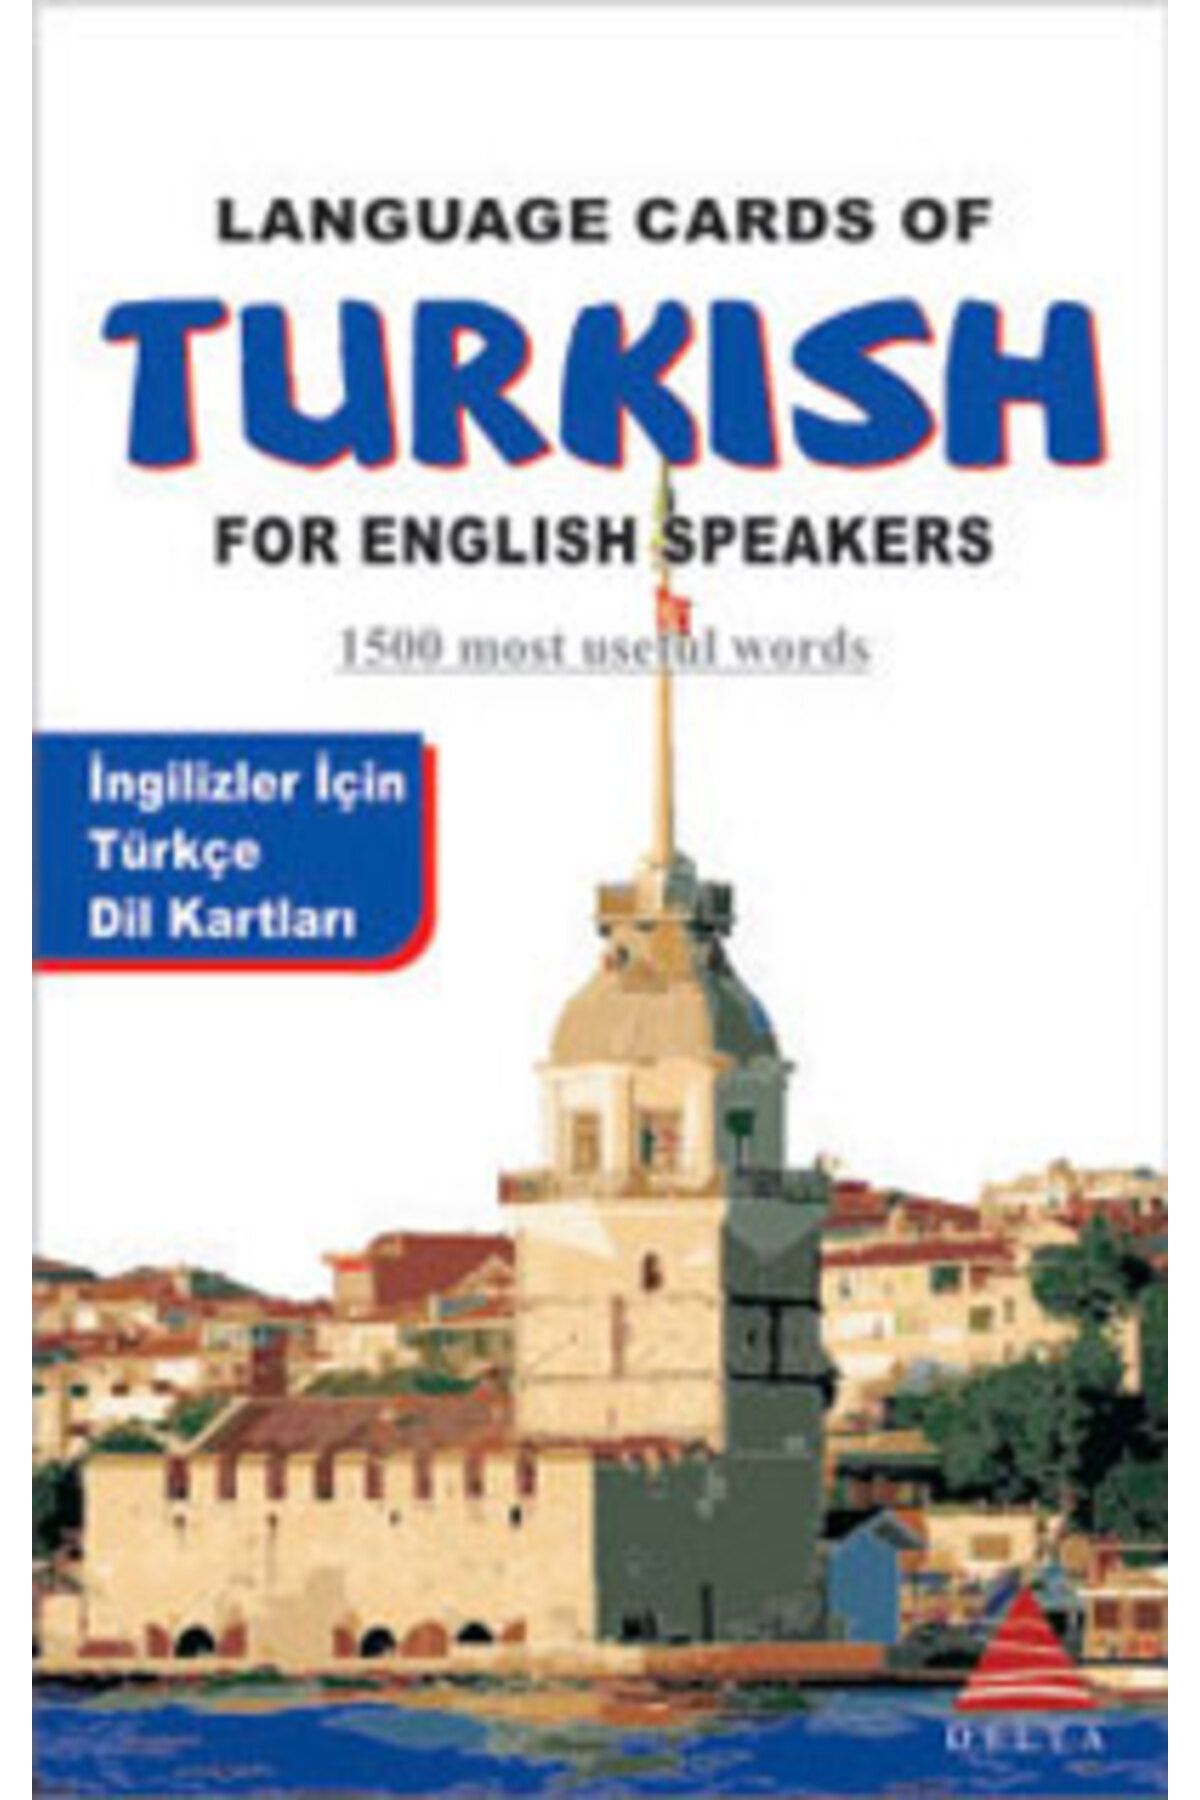 Delta Yayınları İngilizler İçin Türkçe Dil Kartları; Language Cards Of Turkish For English Speakers